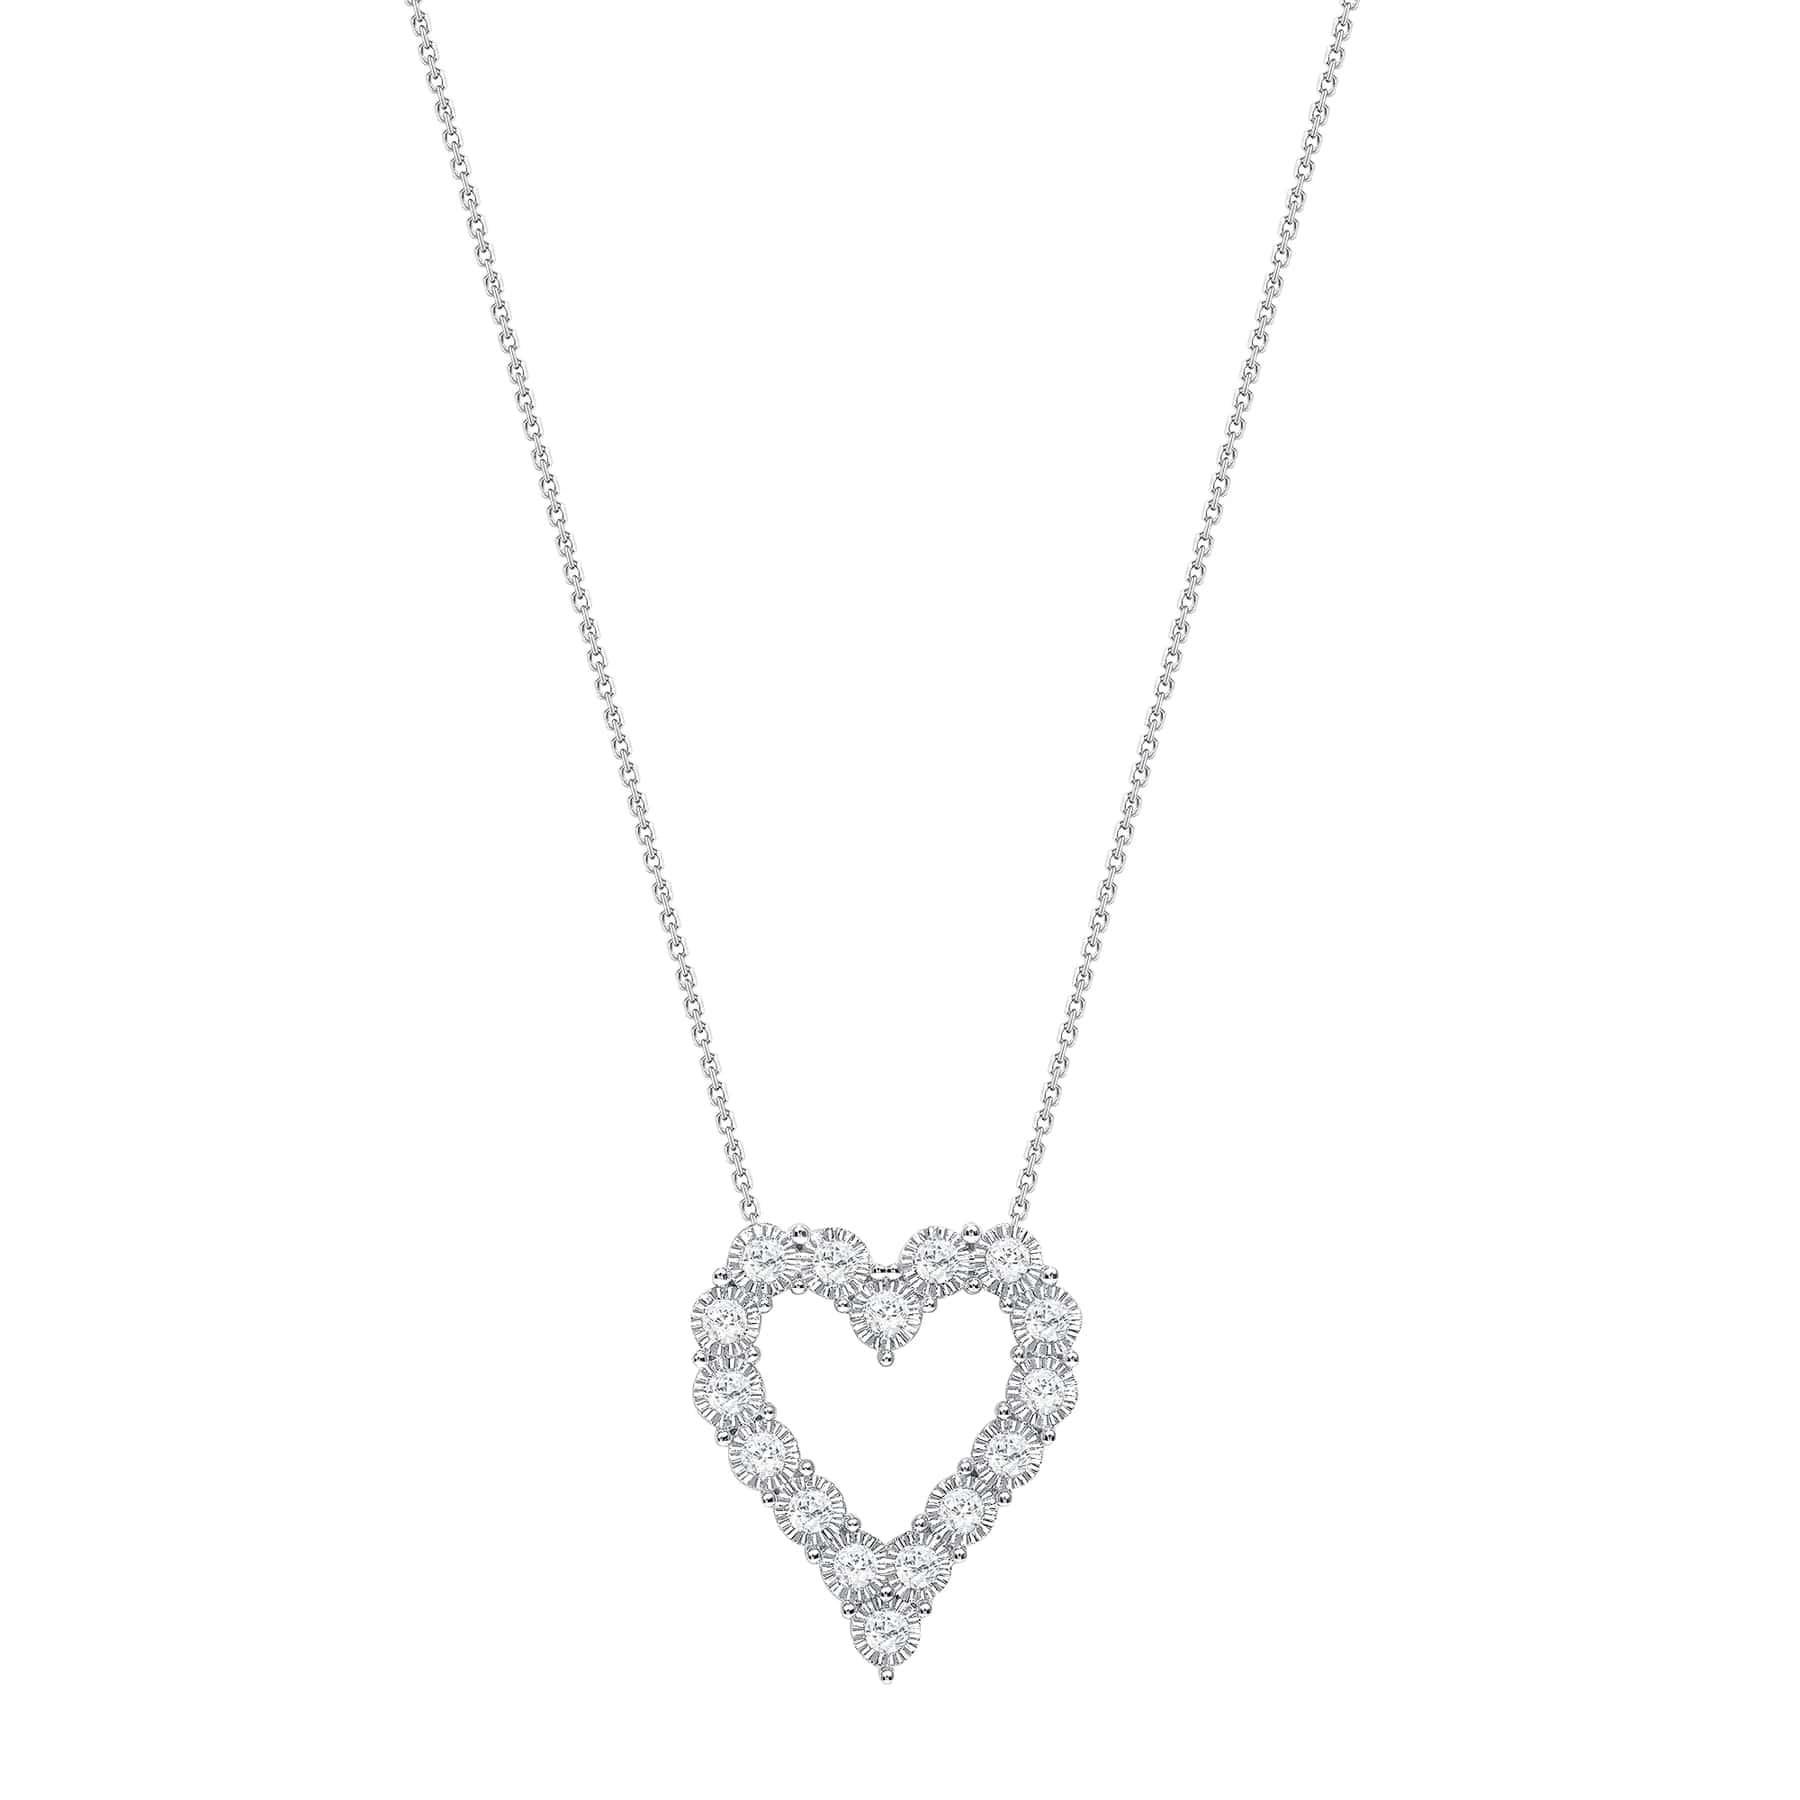 Diese Herz-Diamant-Halskette bietet einen niedlichen und modischen Trend-Look. 

Informationen zur Halskette 
Metall : 14k Gold
Diamantschliff : Rund
Diamant Karat gesamt : 1ct
Diamant Reinheit : VS -SI
Diamant Farbe : F
Länge der Halskette : 16